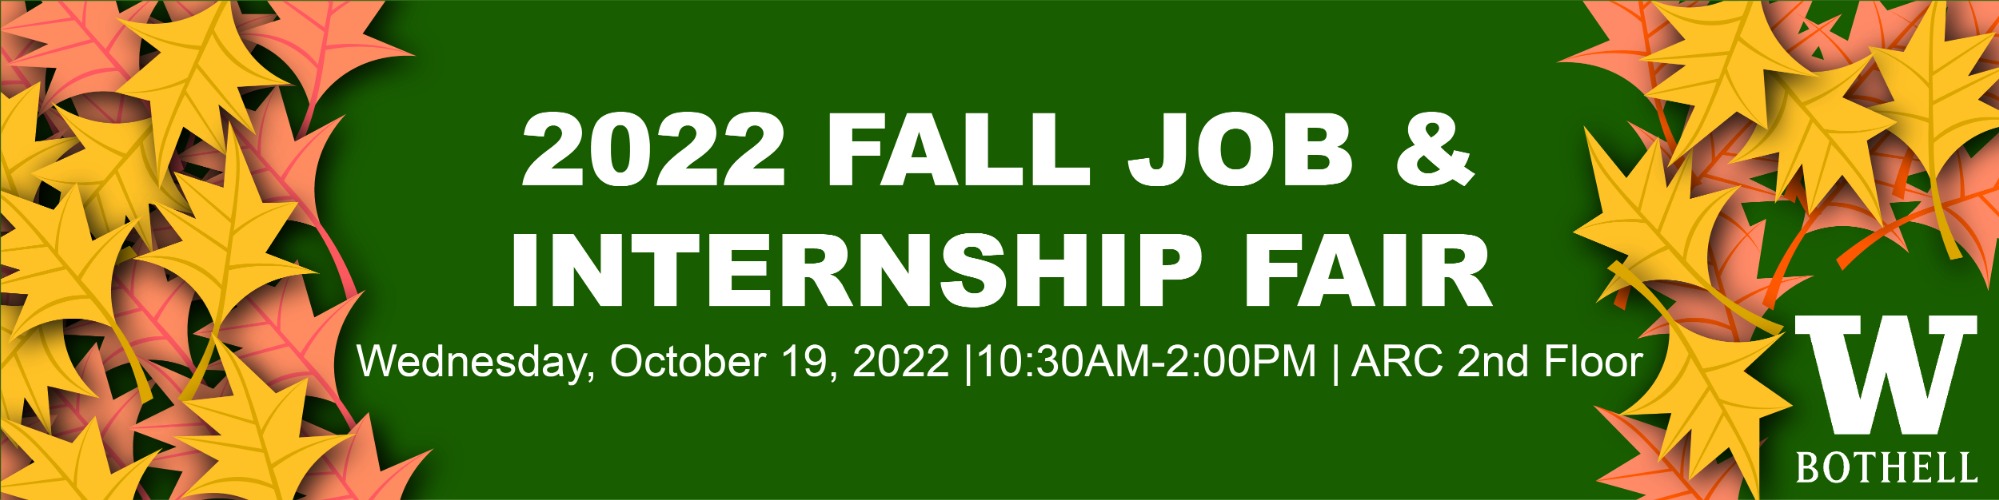 UW Bothell Fall Job & Internship Fair 2022 (In-Person)